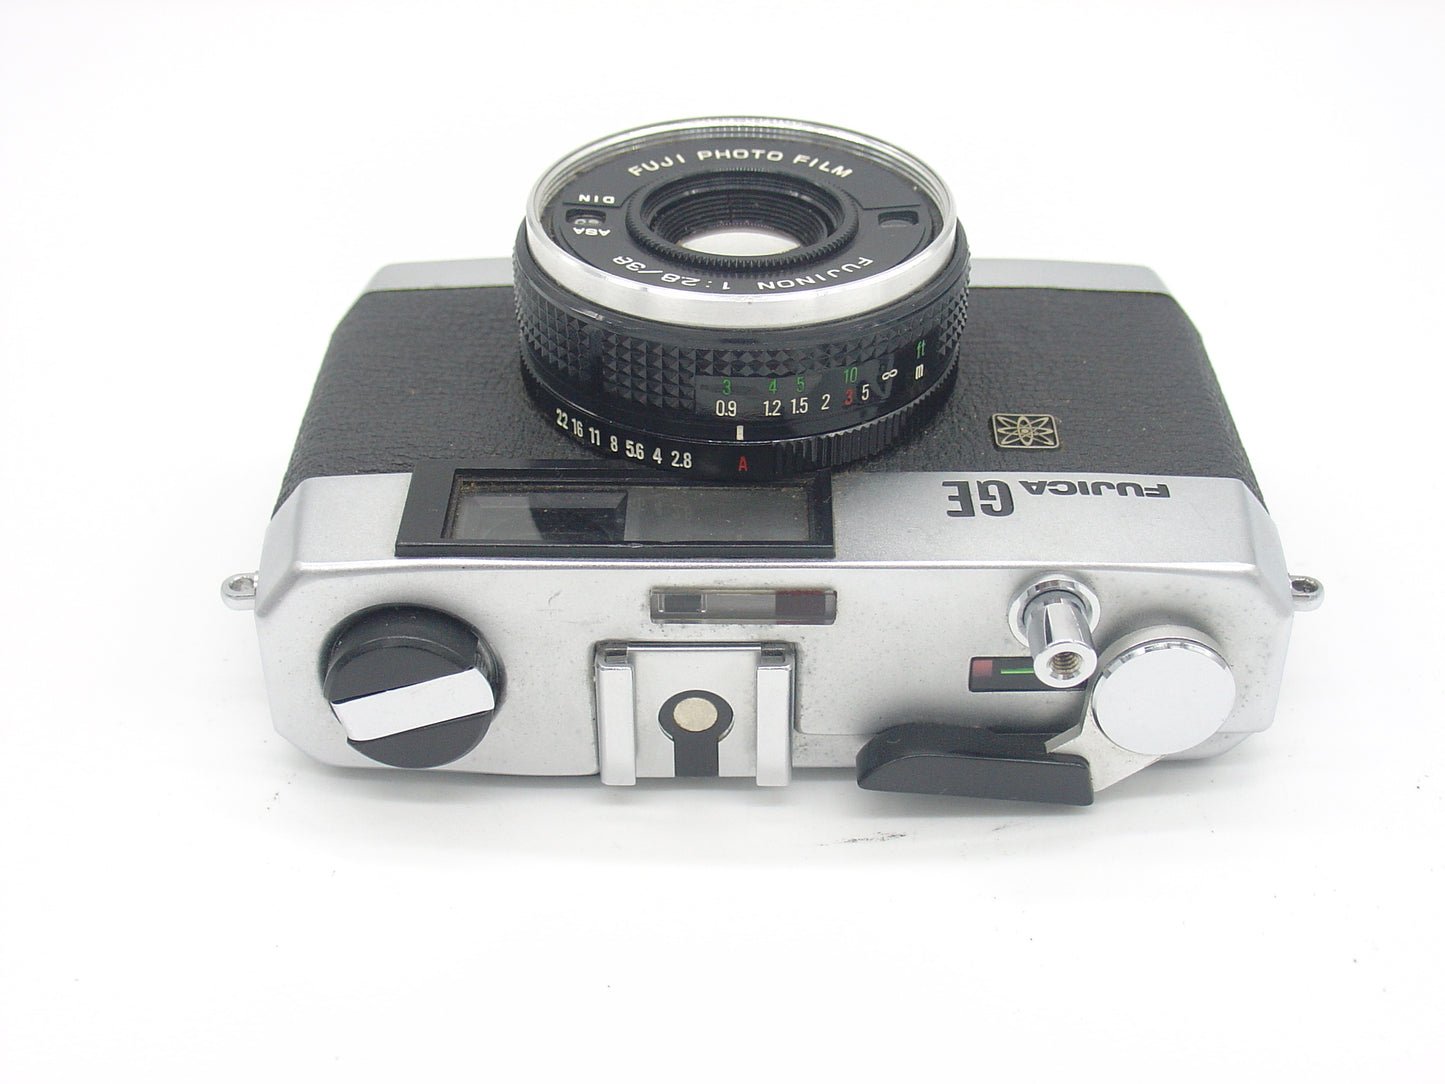 Fujica GE retro compact film camera